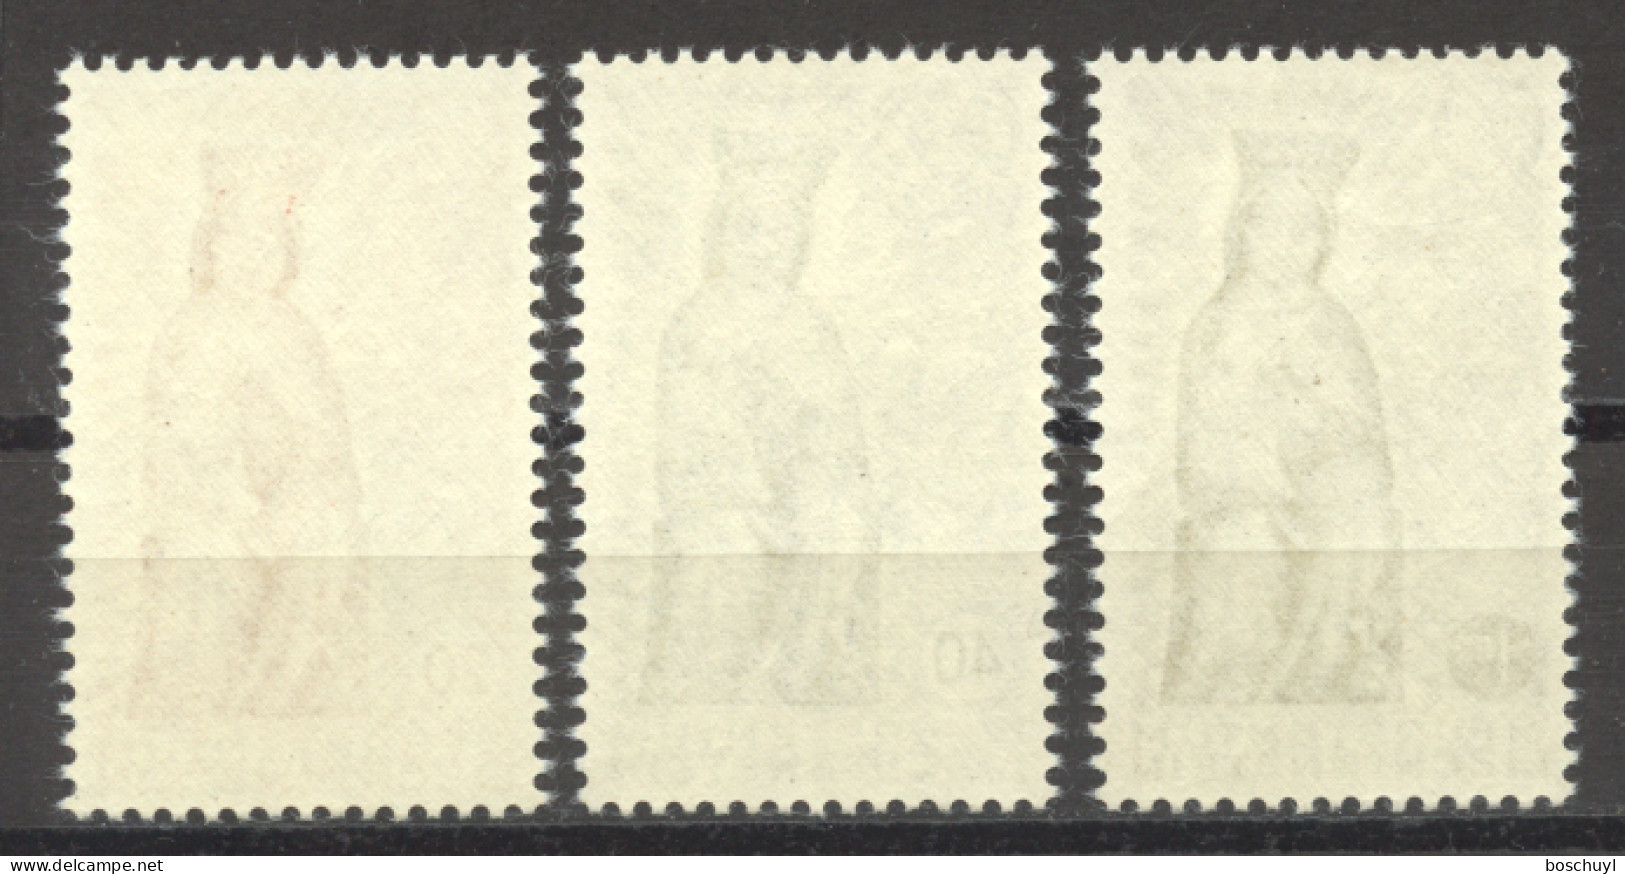 Liechtenstein, 1954, Maria Year, Religion, Statues, MNH, Michel 329-331 - Unused Stamps